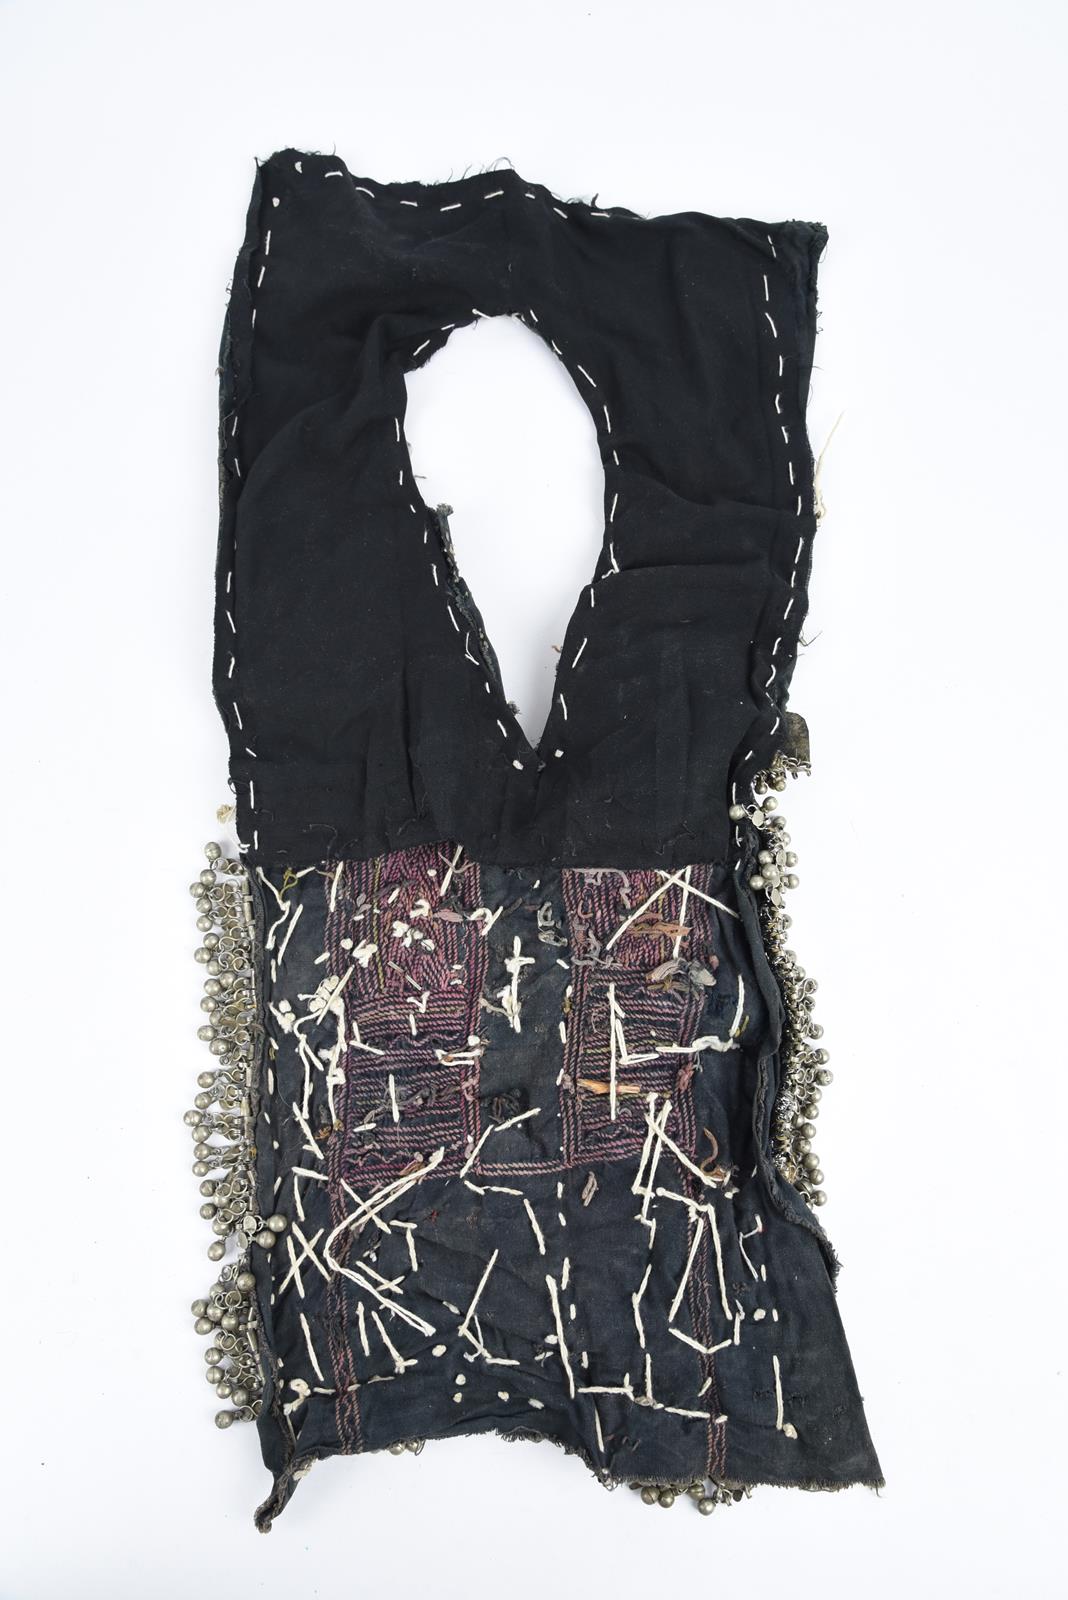 λA Bedouin amulet chest ornament cloth with numerous sewn on amulets and beads, 62cm long, and three - Image 26 of 27